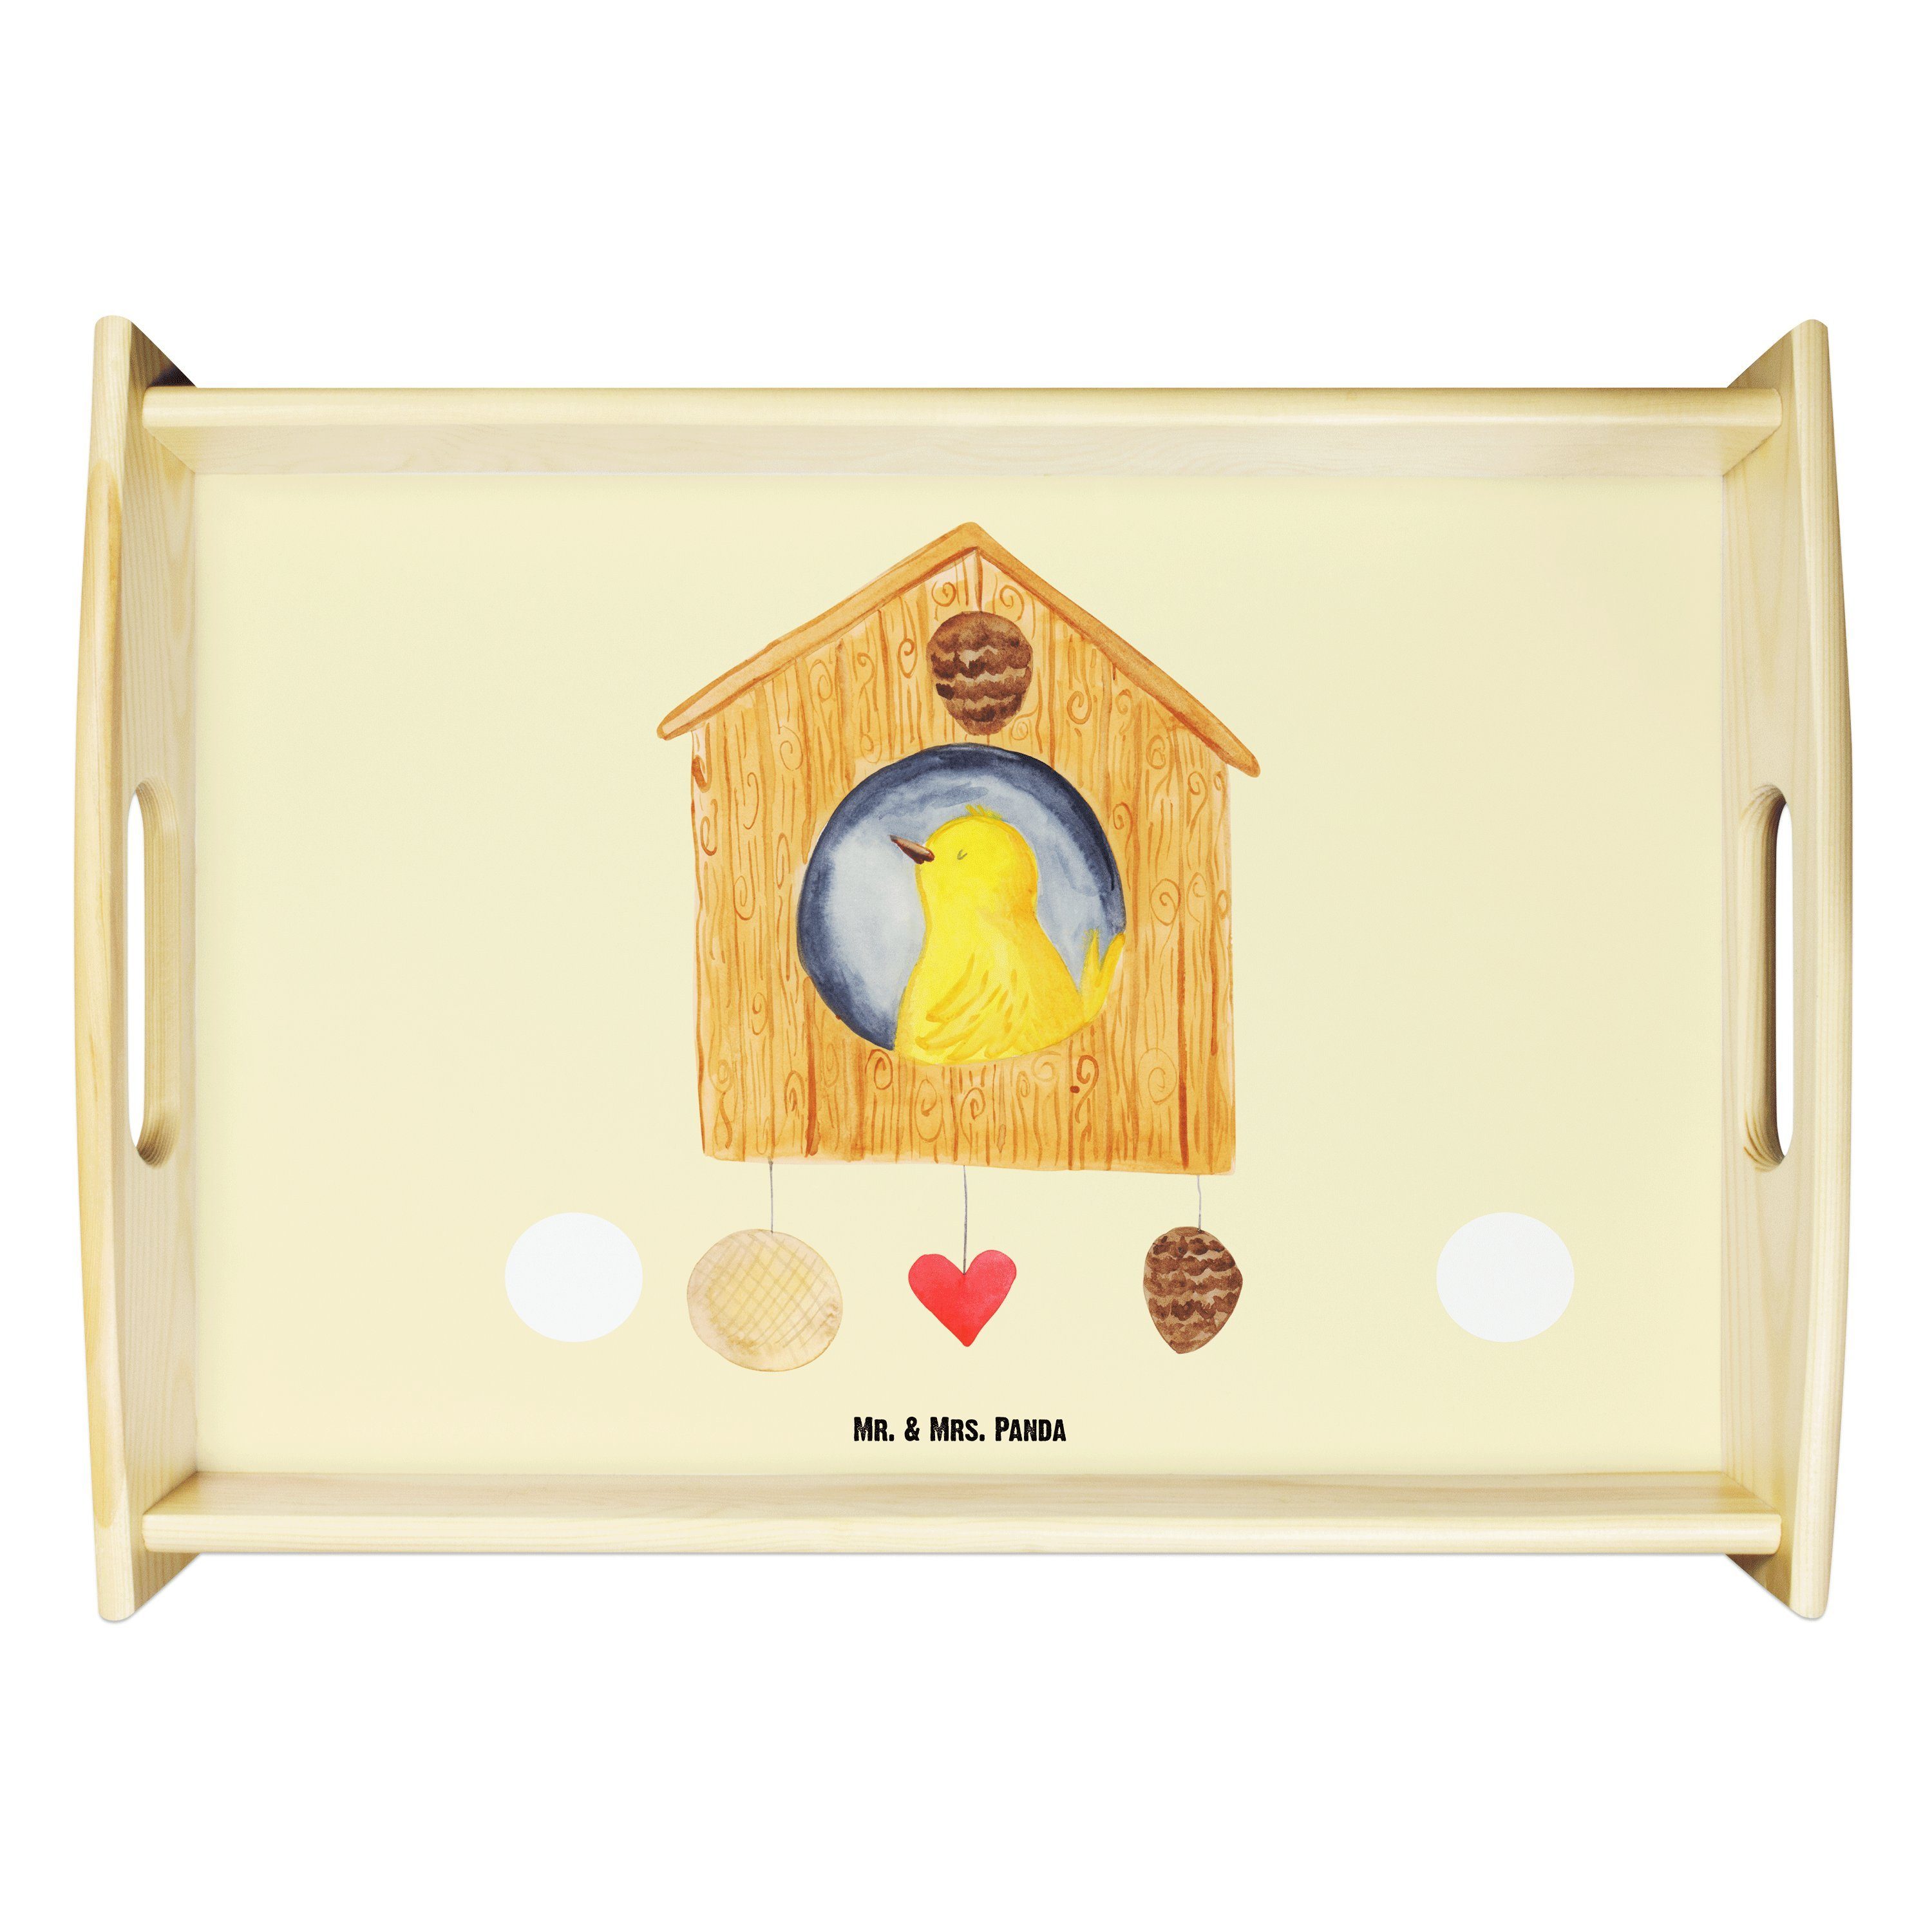 Mr. & Mrs. Panda Tablett Vogelhaus - Gelb Pastell - Geschenk, Tablett, Gute Laune, Dekotablett, Echtholz lasiert, (1-tlg)